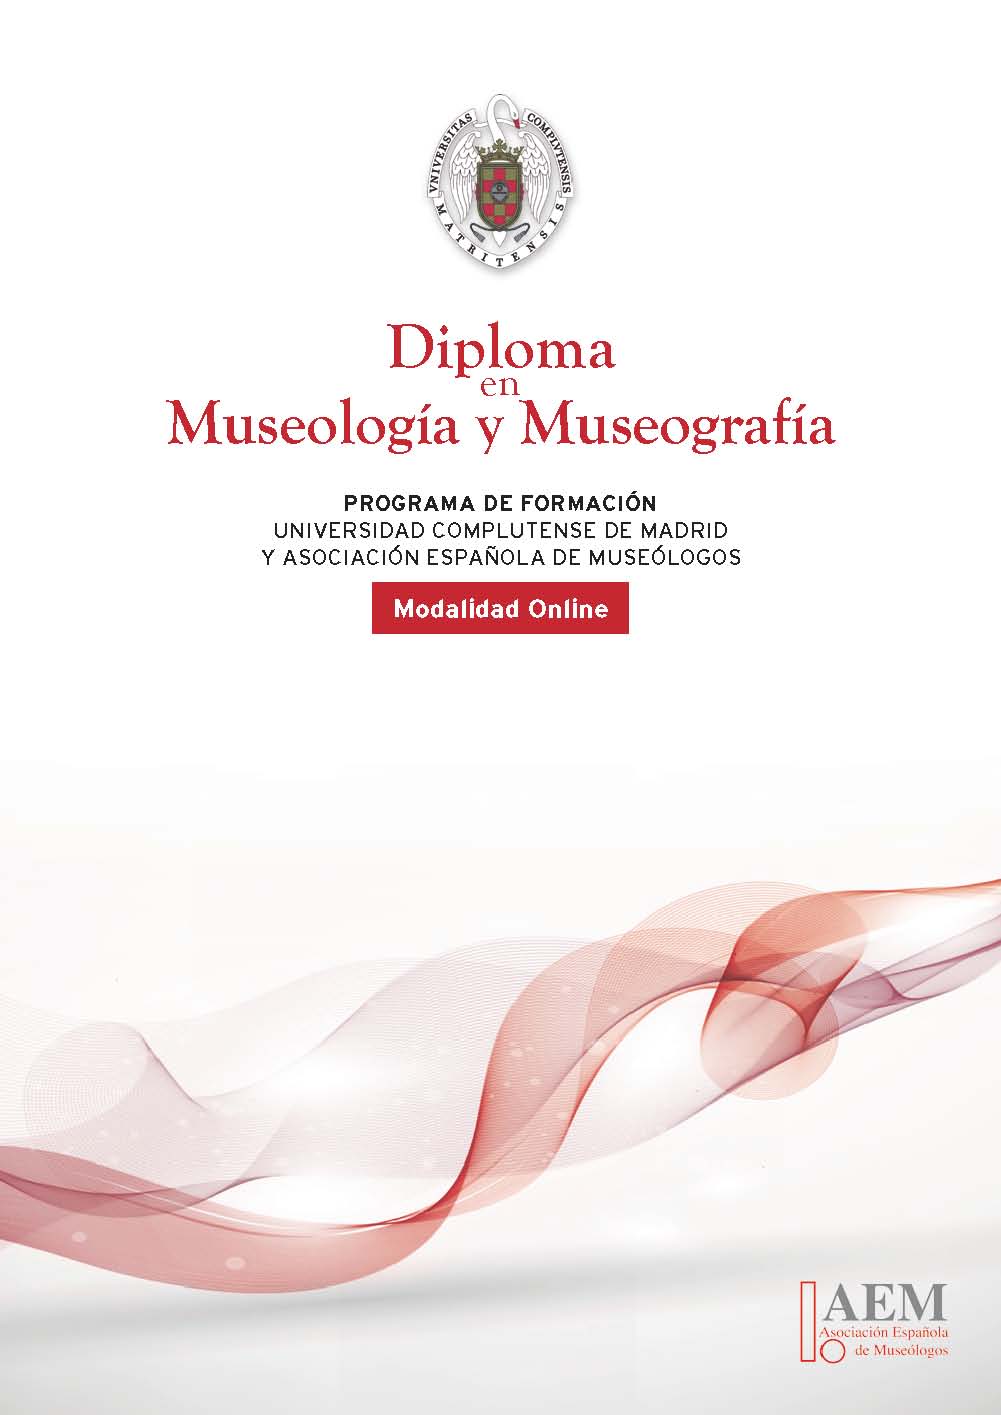 Diploma en Museología y Museografía. https://www.ucm.es/estudios/diploma-museologia2001